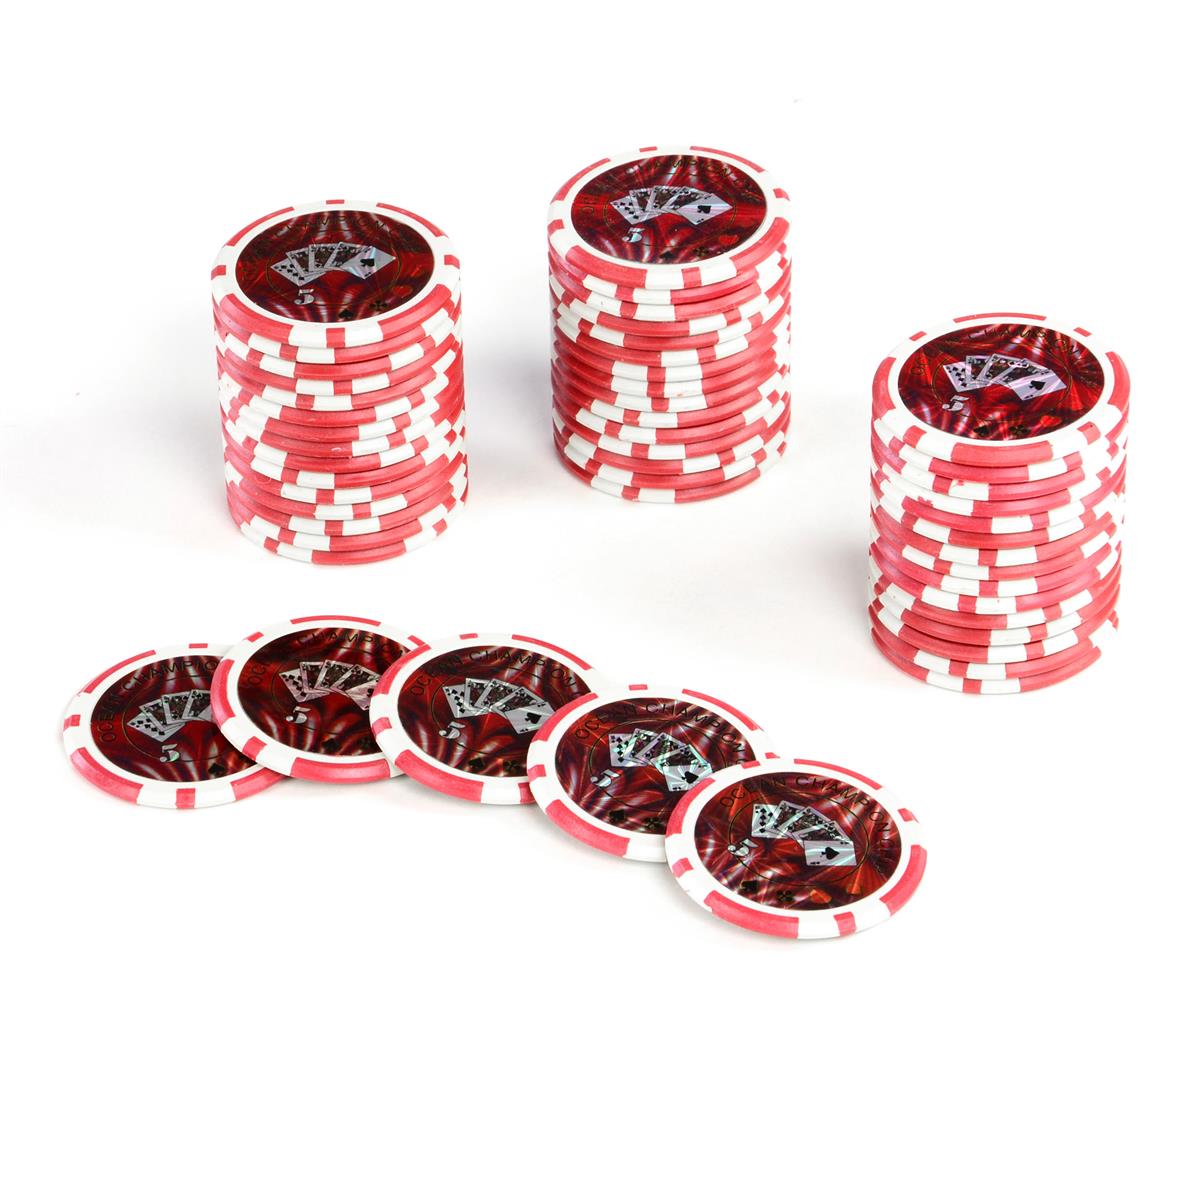 50 Profi Laser Poker Chips Pokerset 5 Farben Werte für Pokerkoffer Metallkern 